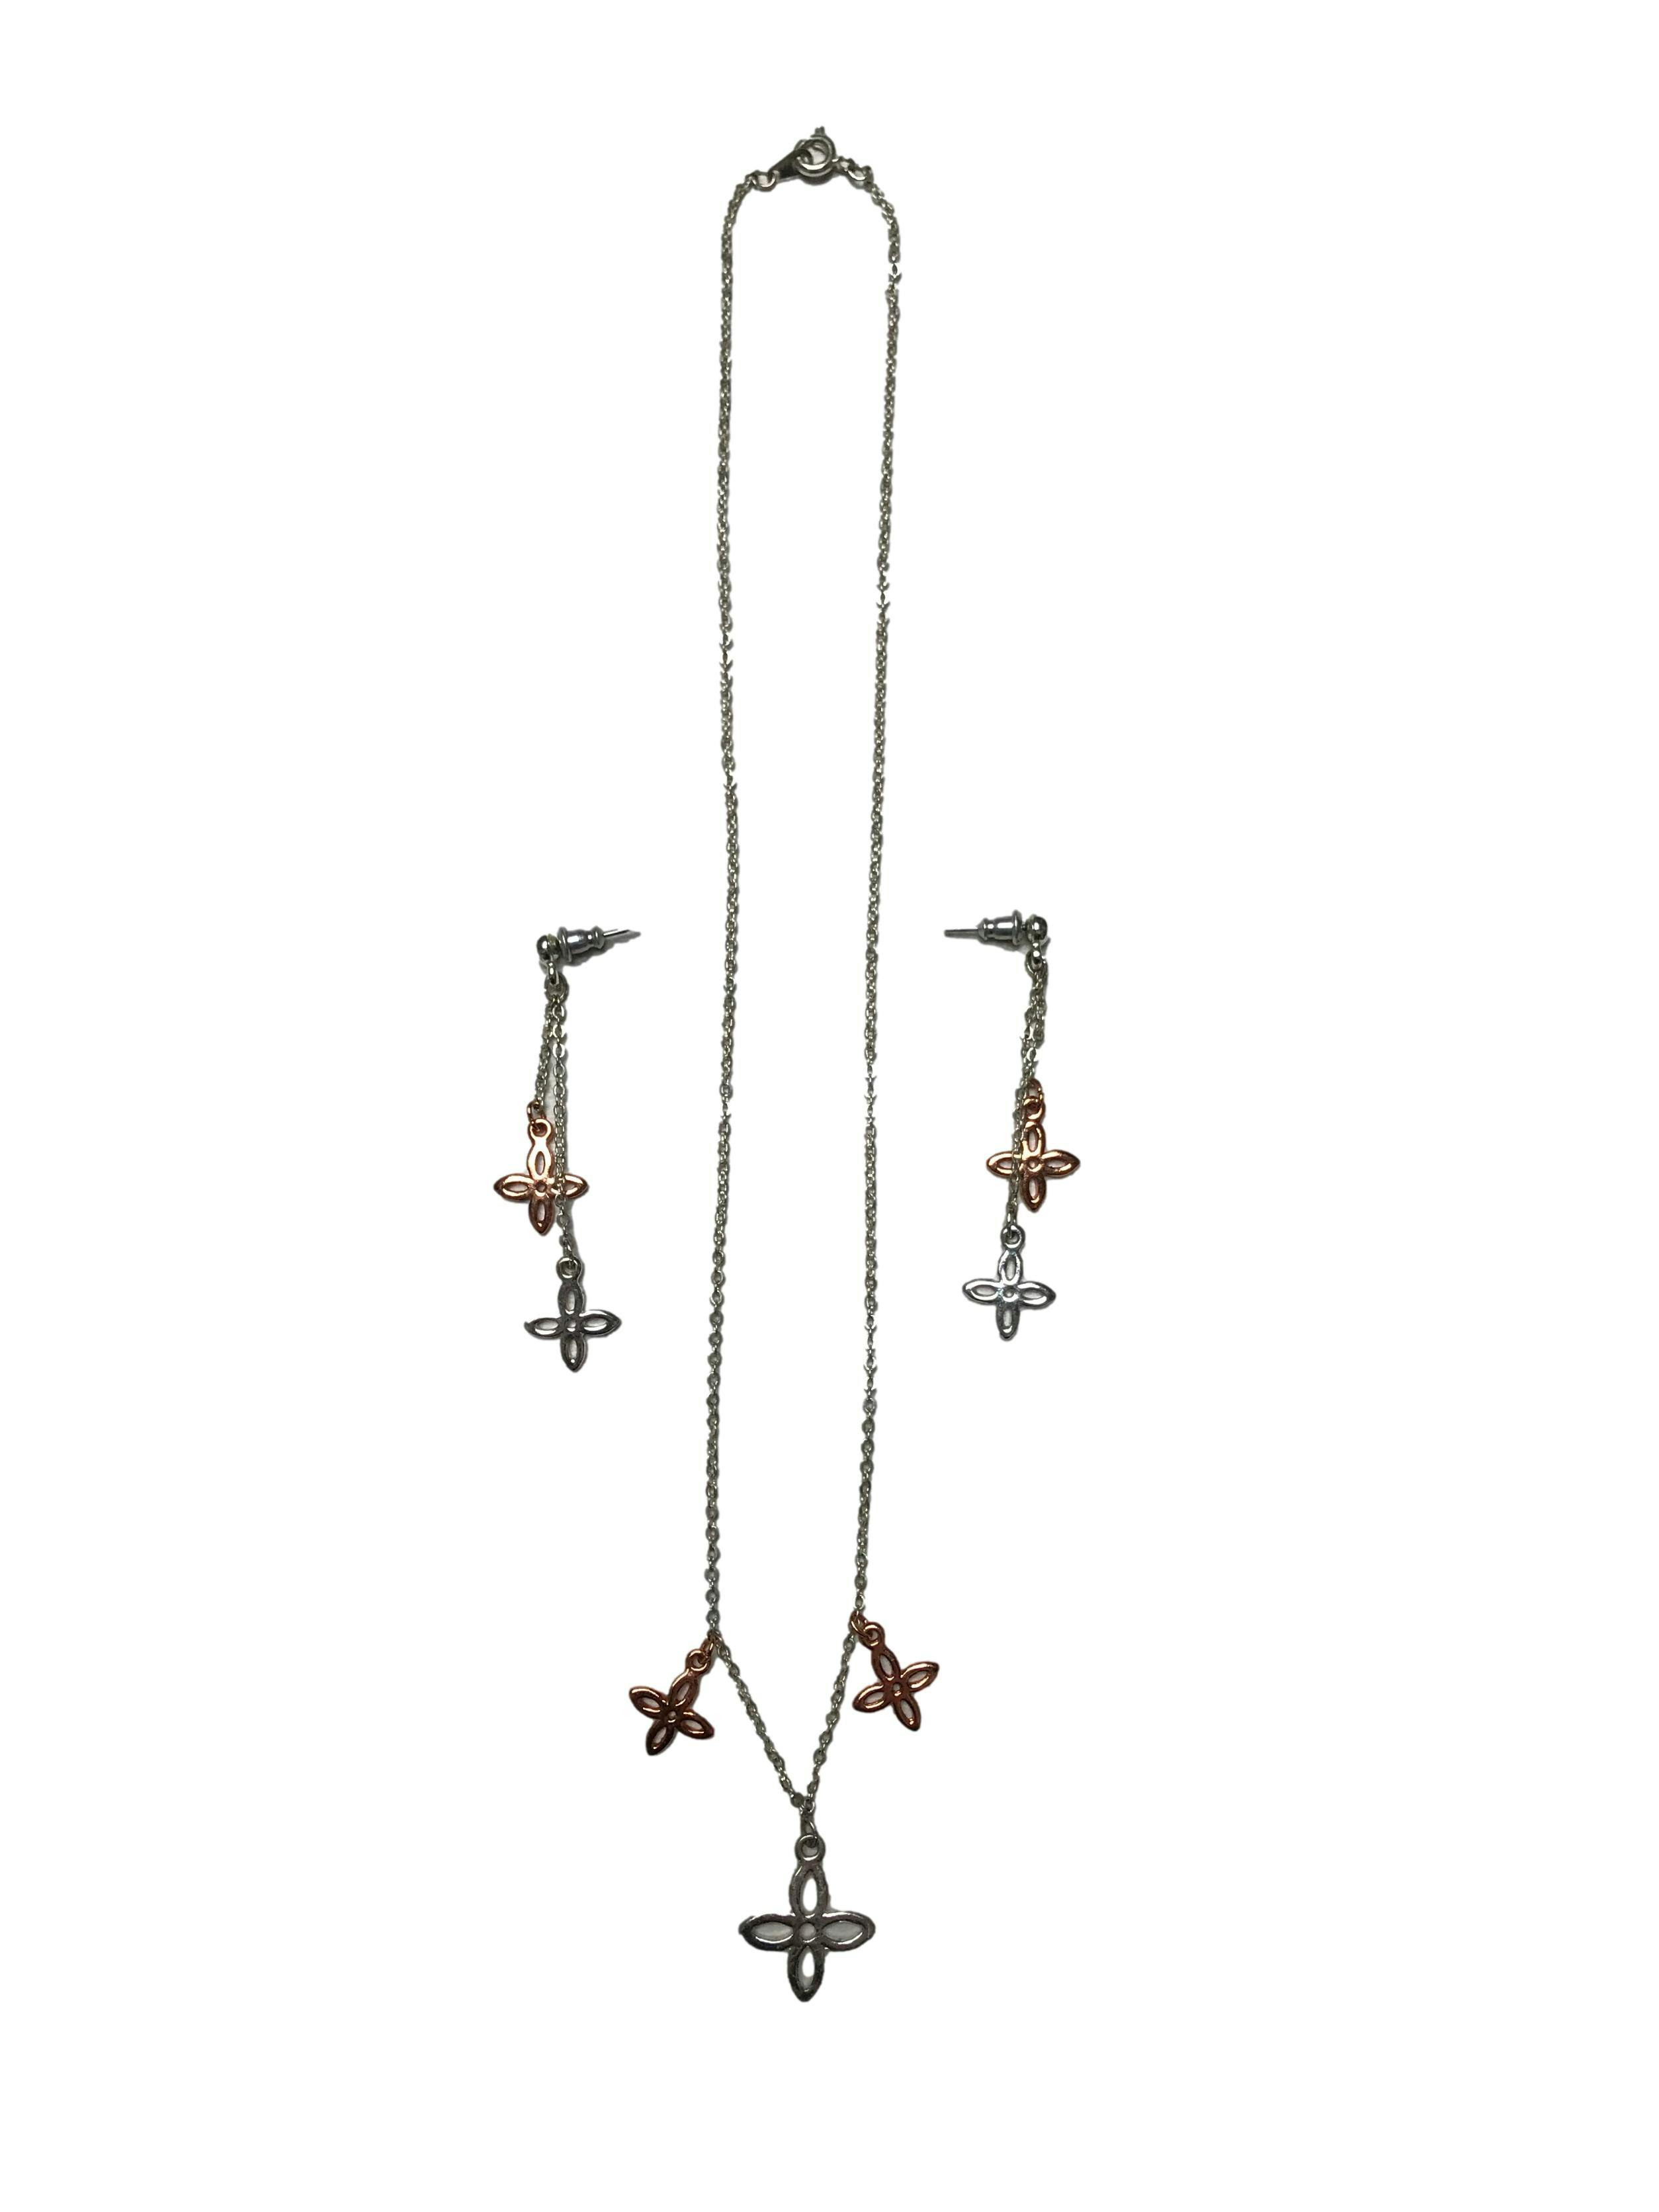 Set de aretes y collar con flores en tono bronce y plata. Largo collar 48 cm. Largo aretes 5.5cm. 